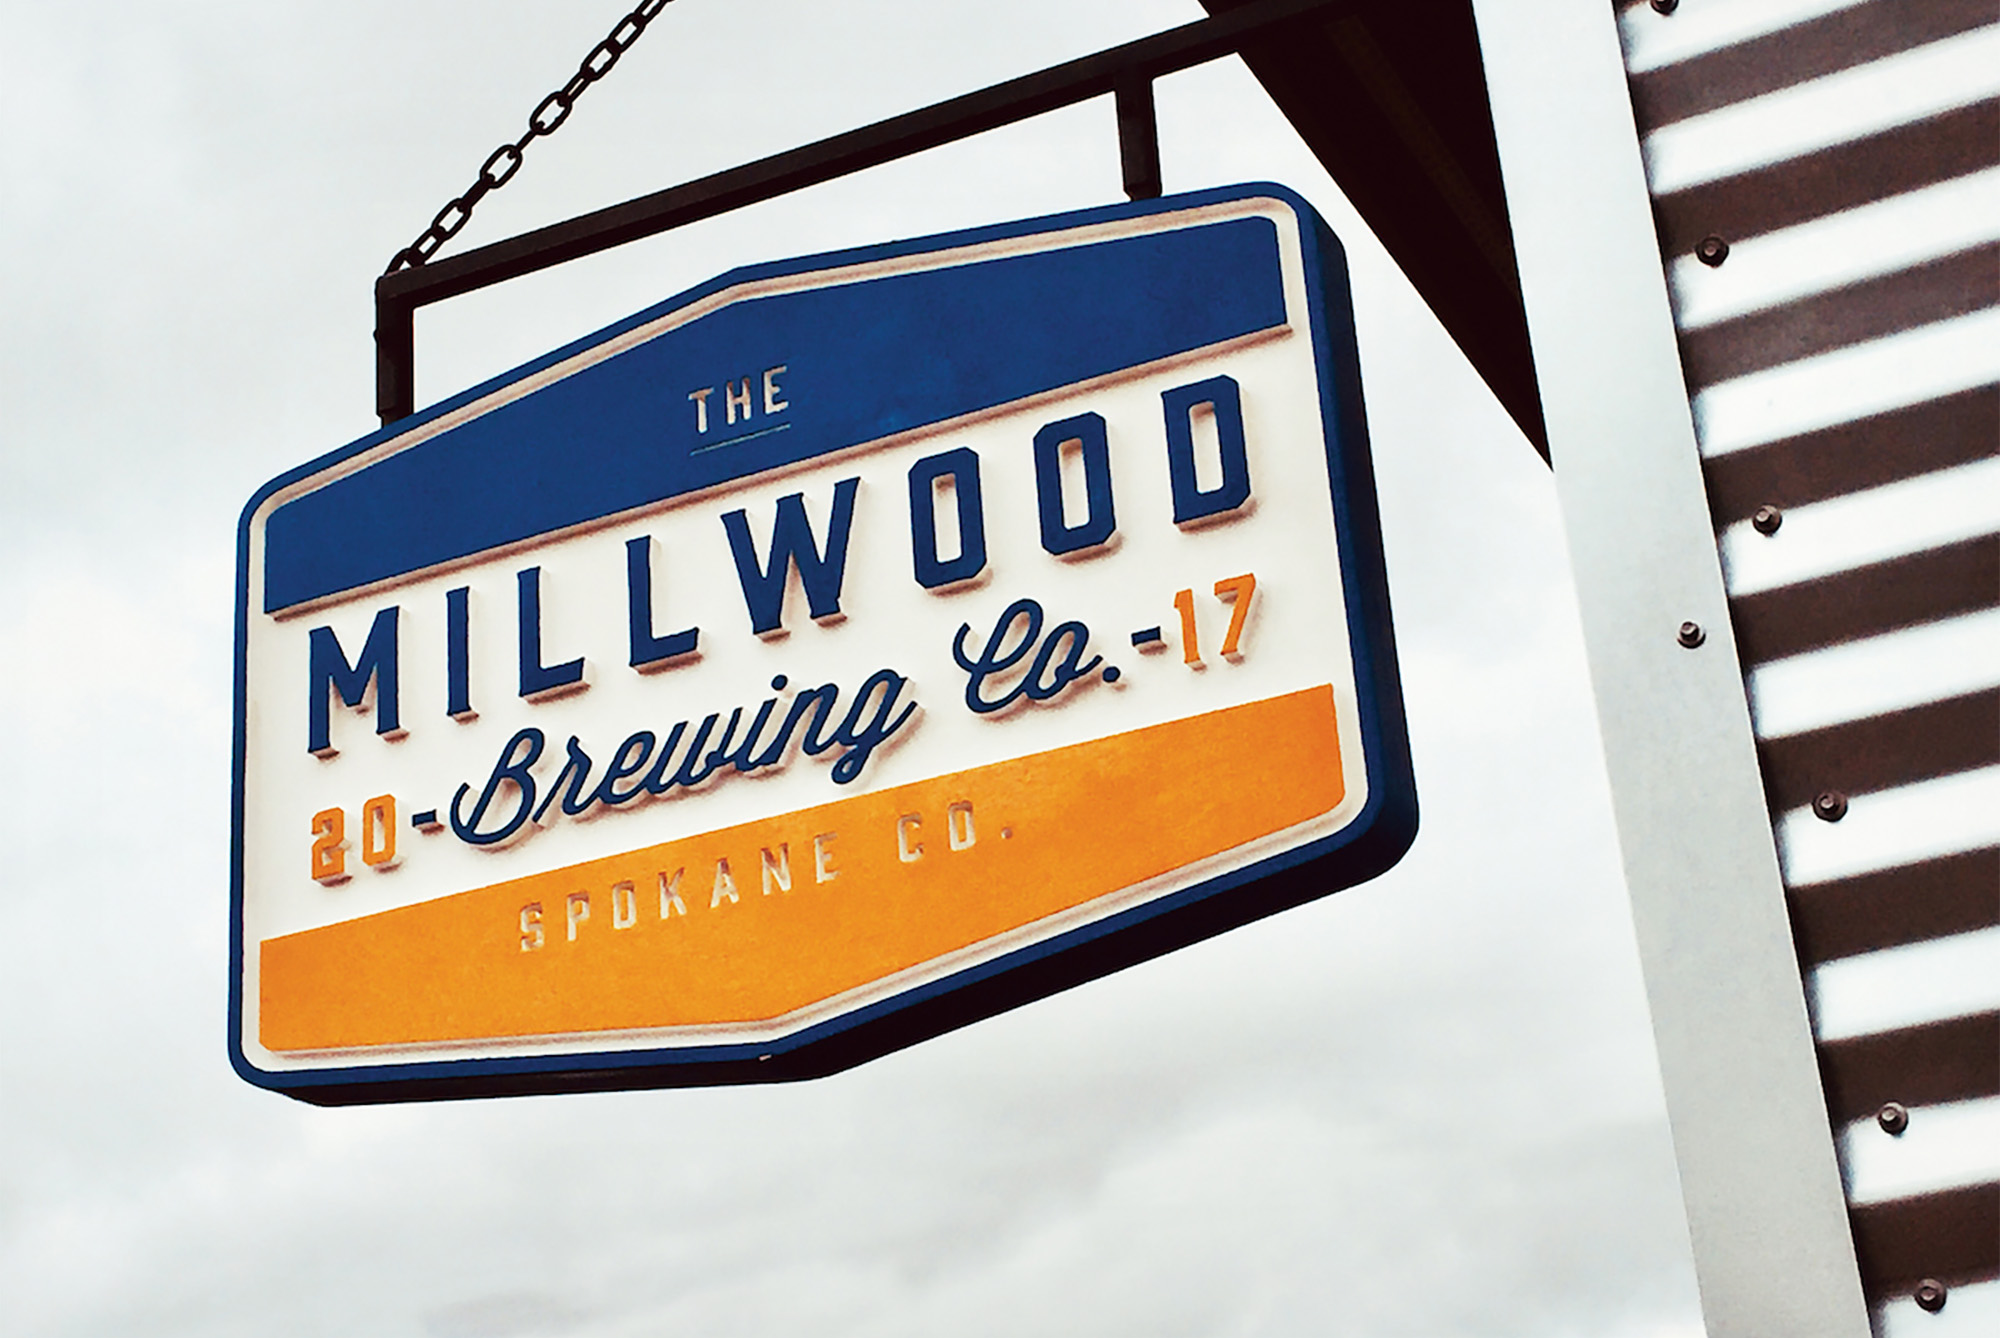 Millwood Washington based Millwood Brewing Company brand shield logo signage.